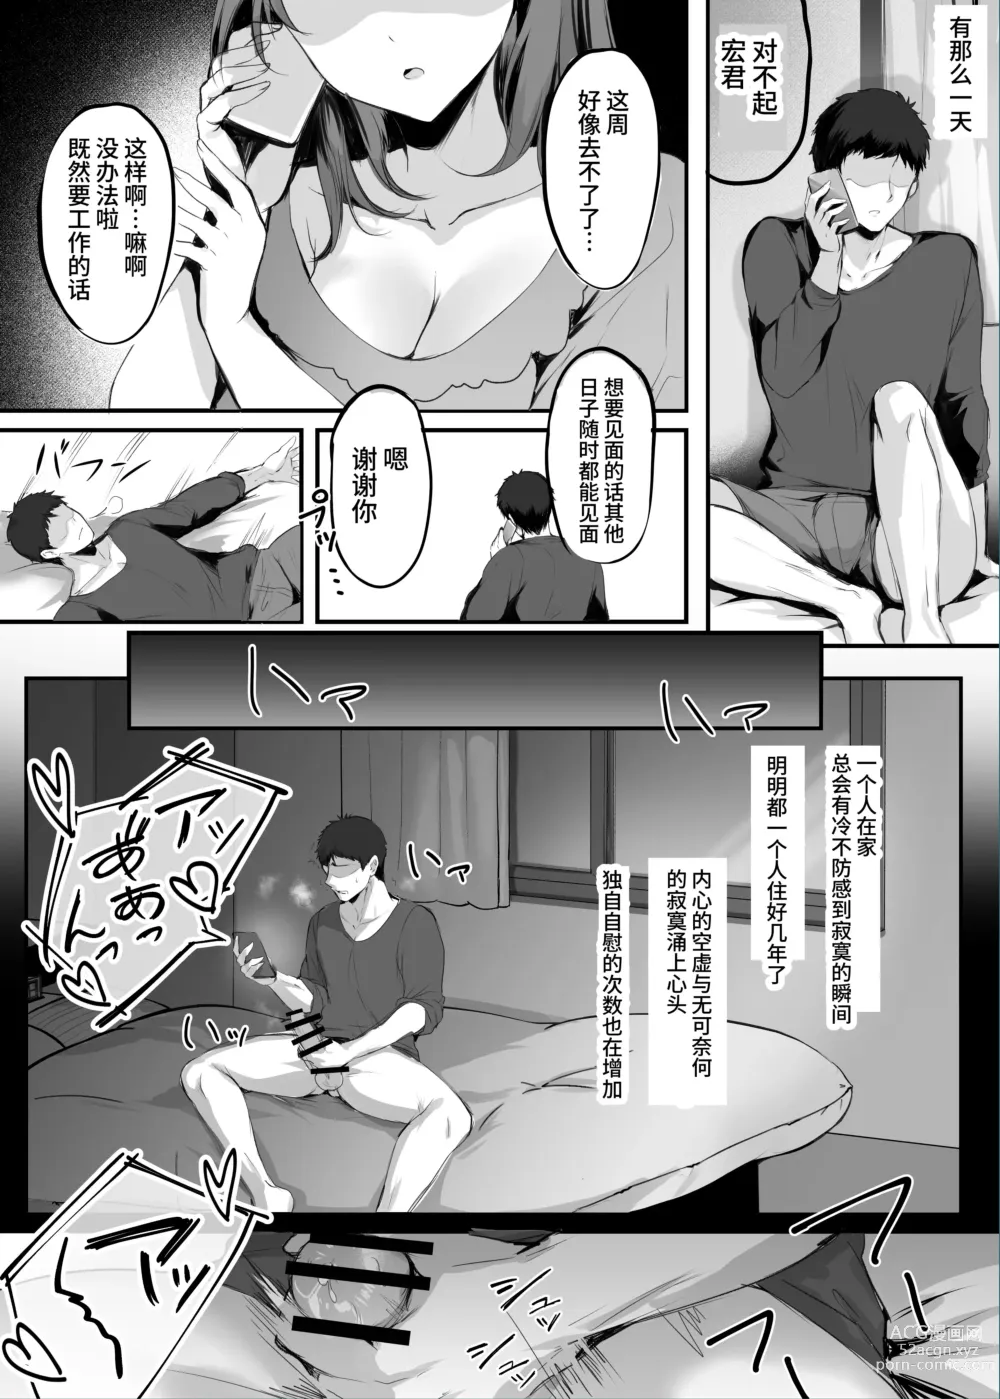 Page 11 of doujinshi Numaru.